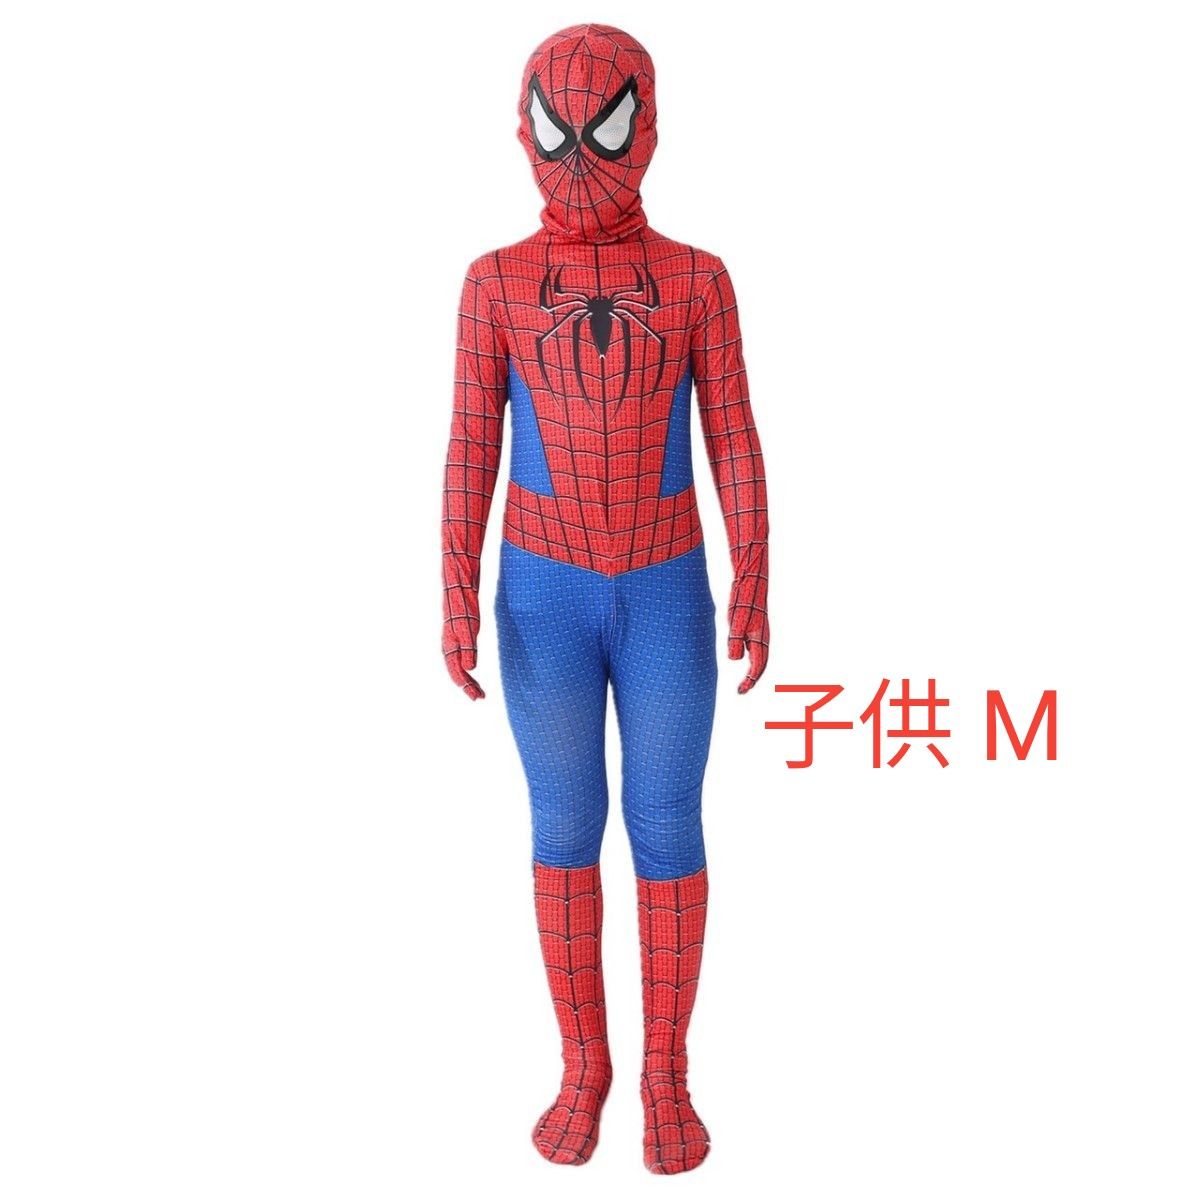 スパイダーマン ハロウィン コスチューム コスプレ スパイダーマン仮装 子供用M